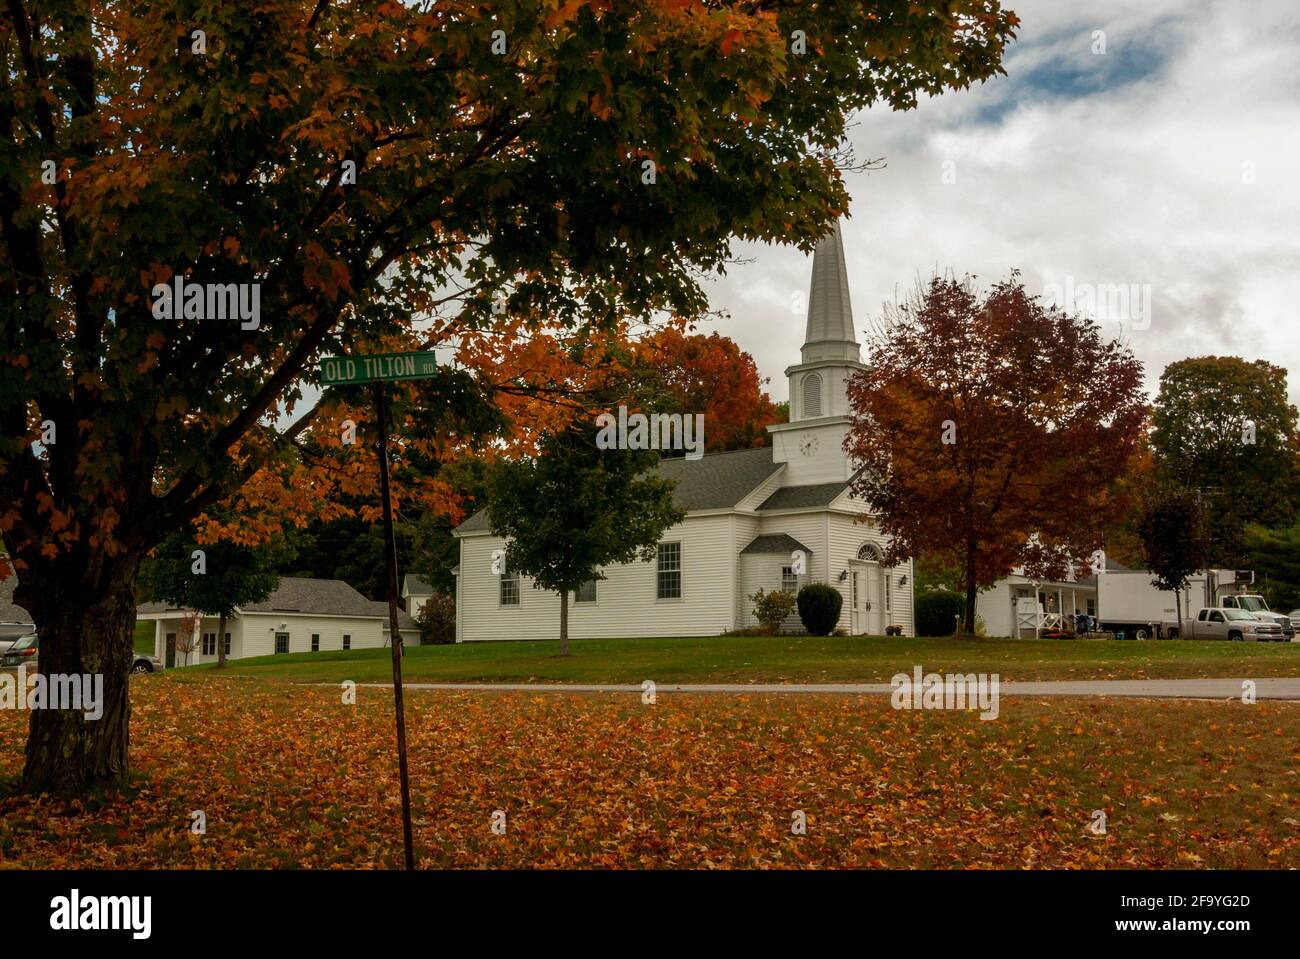 La iglesia comunitaria unida de Canterbury, de madera blanca, New Hampshire, EE.UU., entre las hojas caídas y el follaje rojo en otoño / otoño Foto de stock